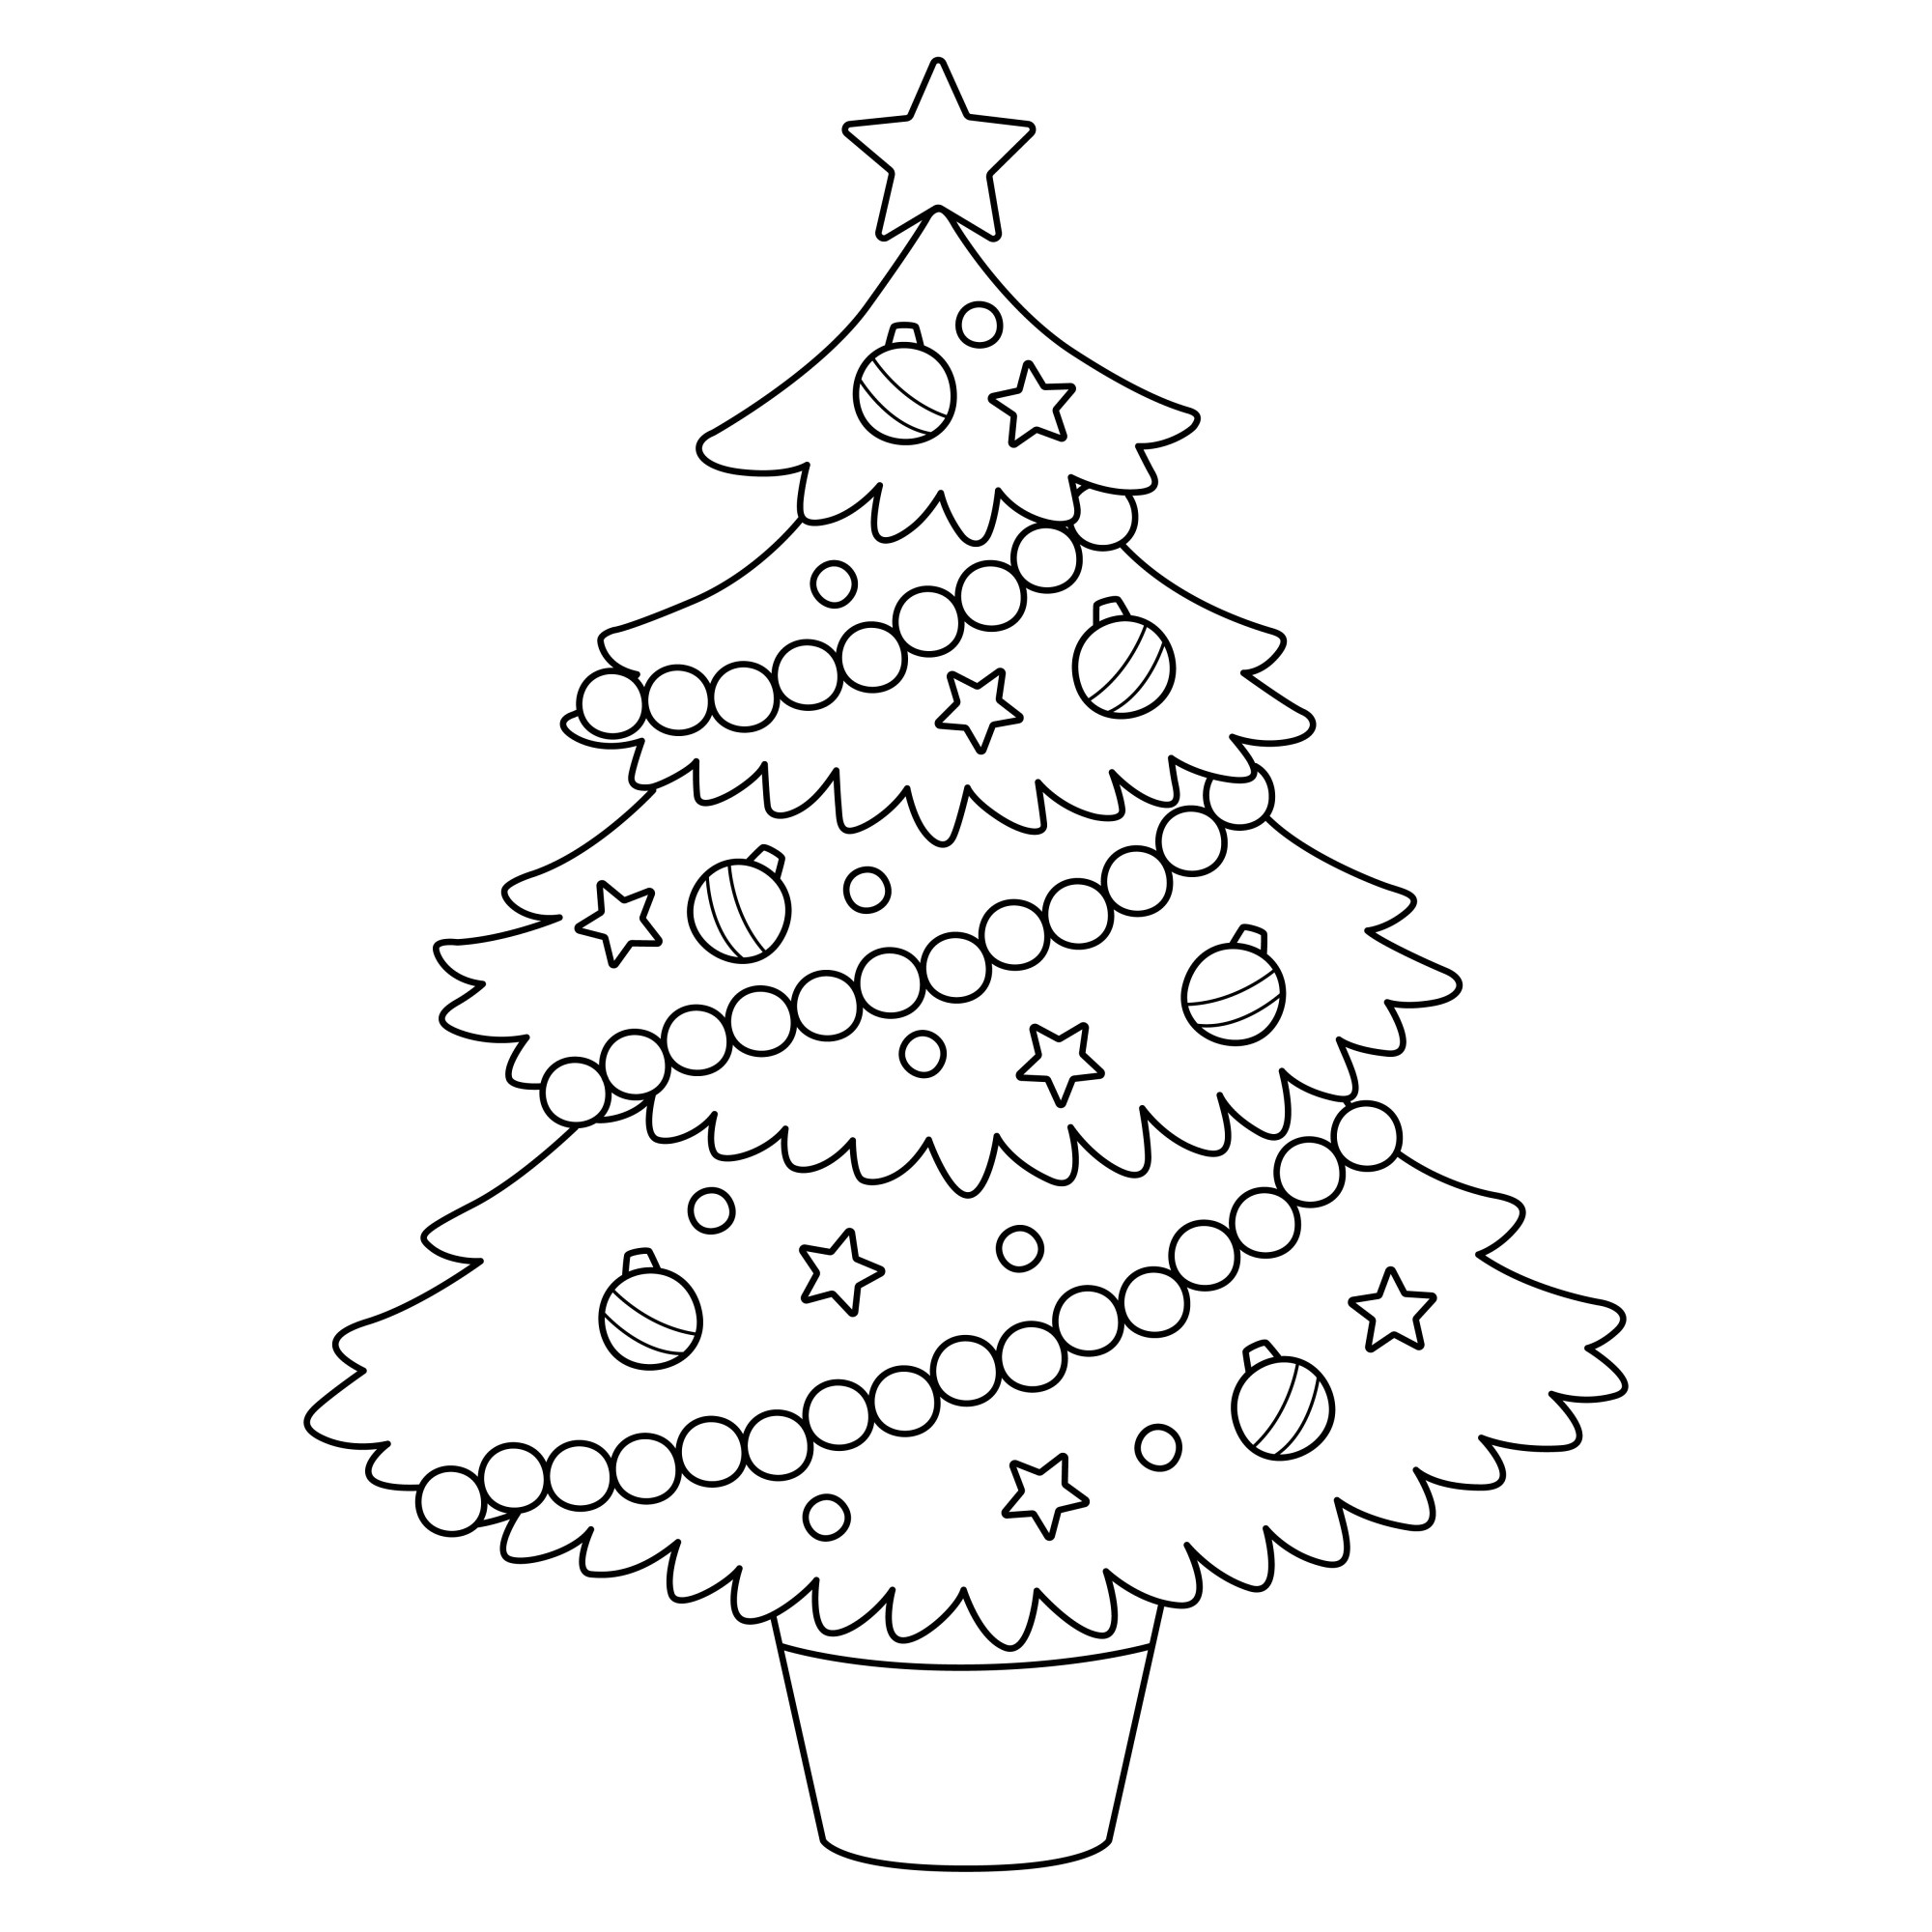 Раскраска для детей: украшенная новогодняя ёлка «Волшебное настроение»